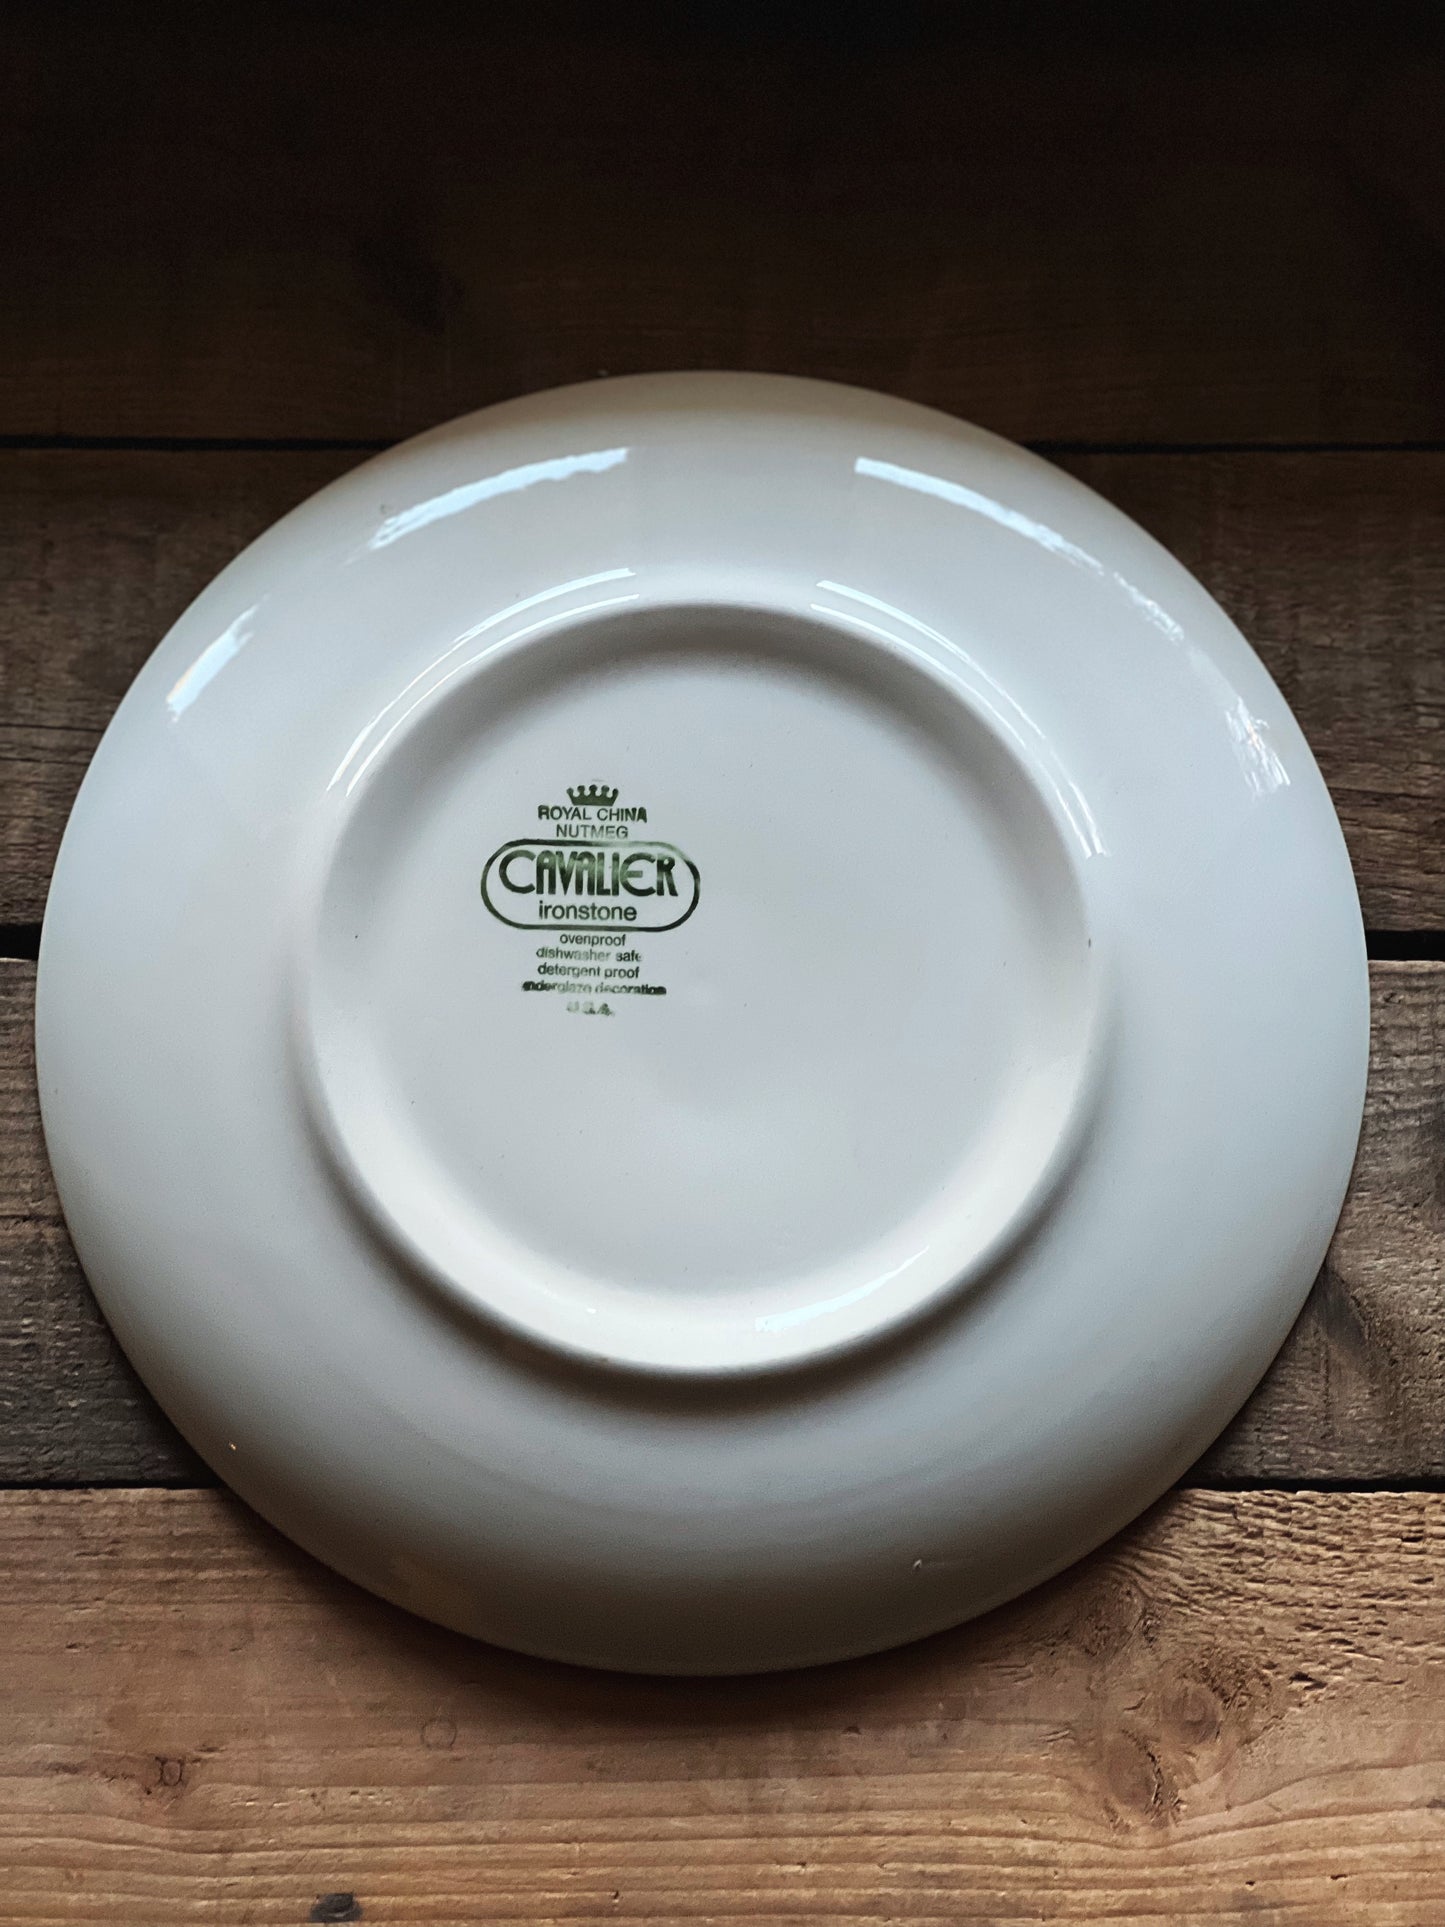 Pair of Vintage Cavalier Ironstone Nutmeg Dinner Plates